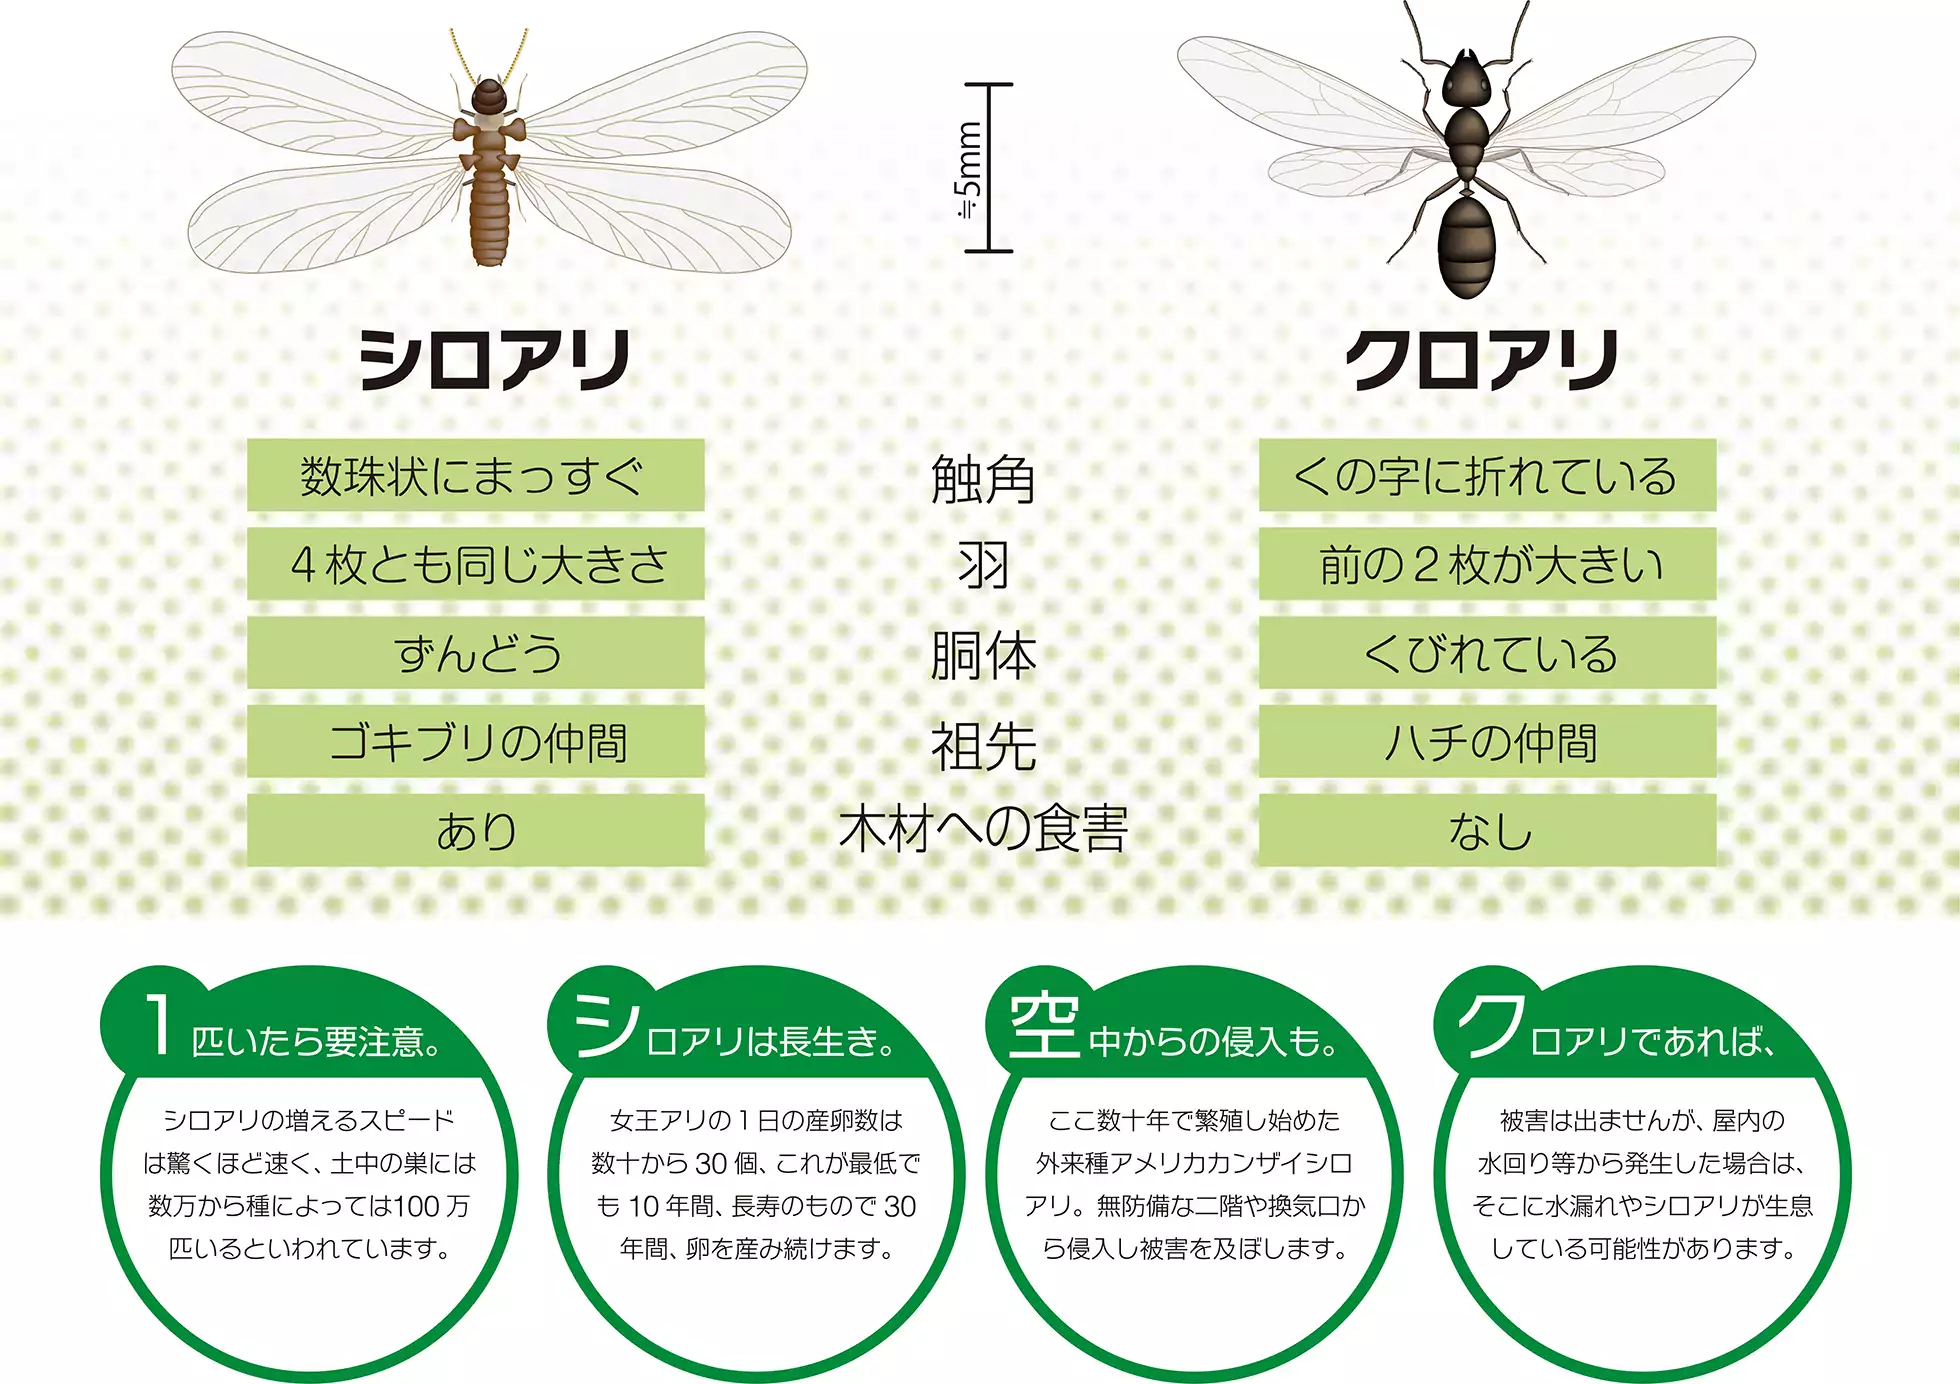 シロアリとクロアリの羽アリの見分け方や特徴の違い